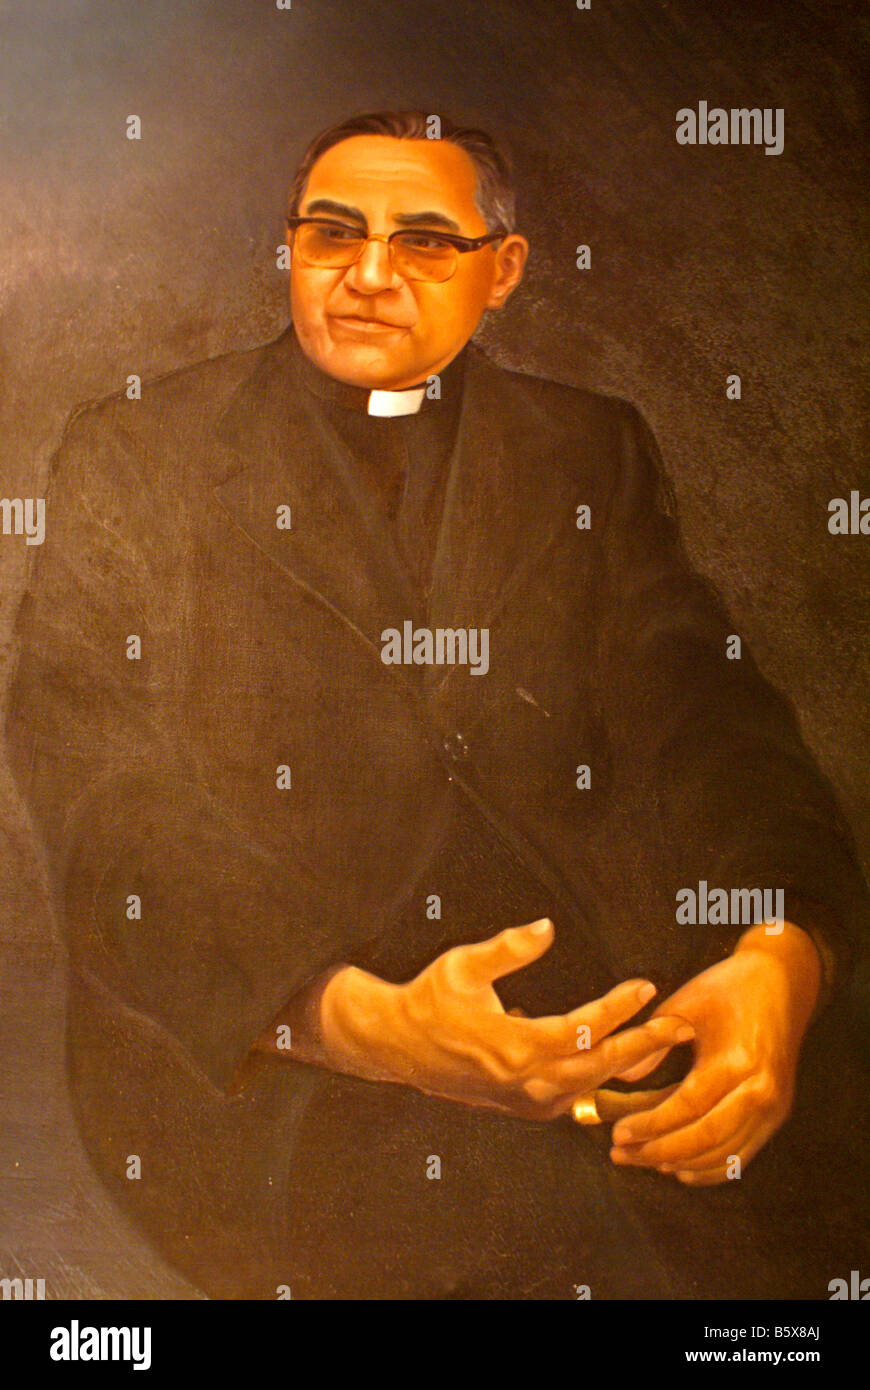 Portrait of Archbishop Oscar Romero, Centro Monsegñor Romero at the Universidad Centroamericana, San Salvador, El Salvador Stock Photo